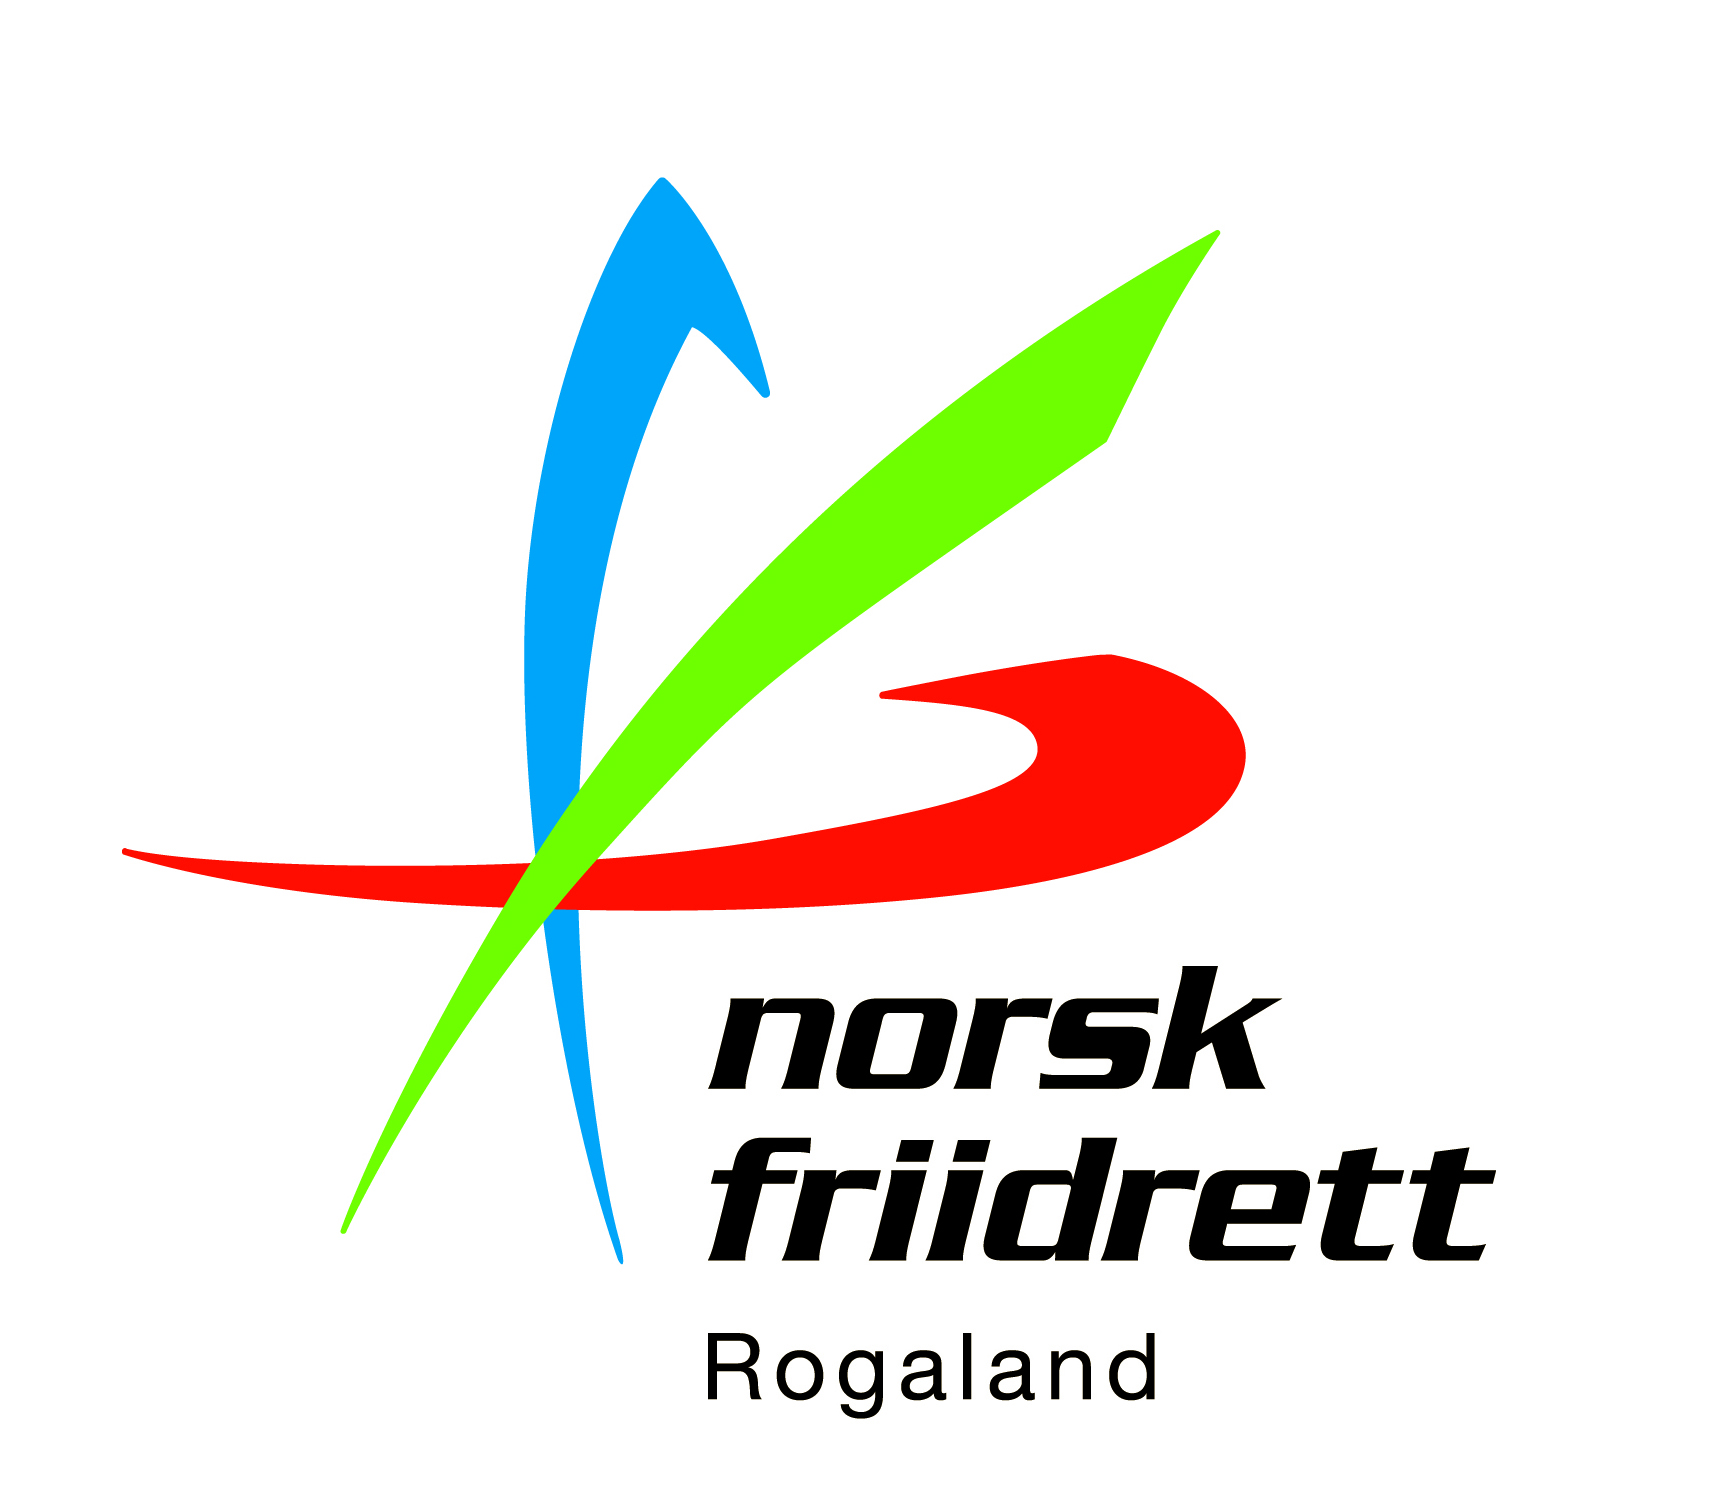 norsk friidrett rogaland logo.jpg